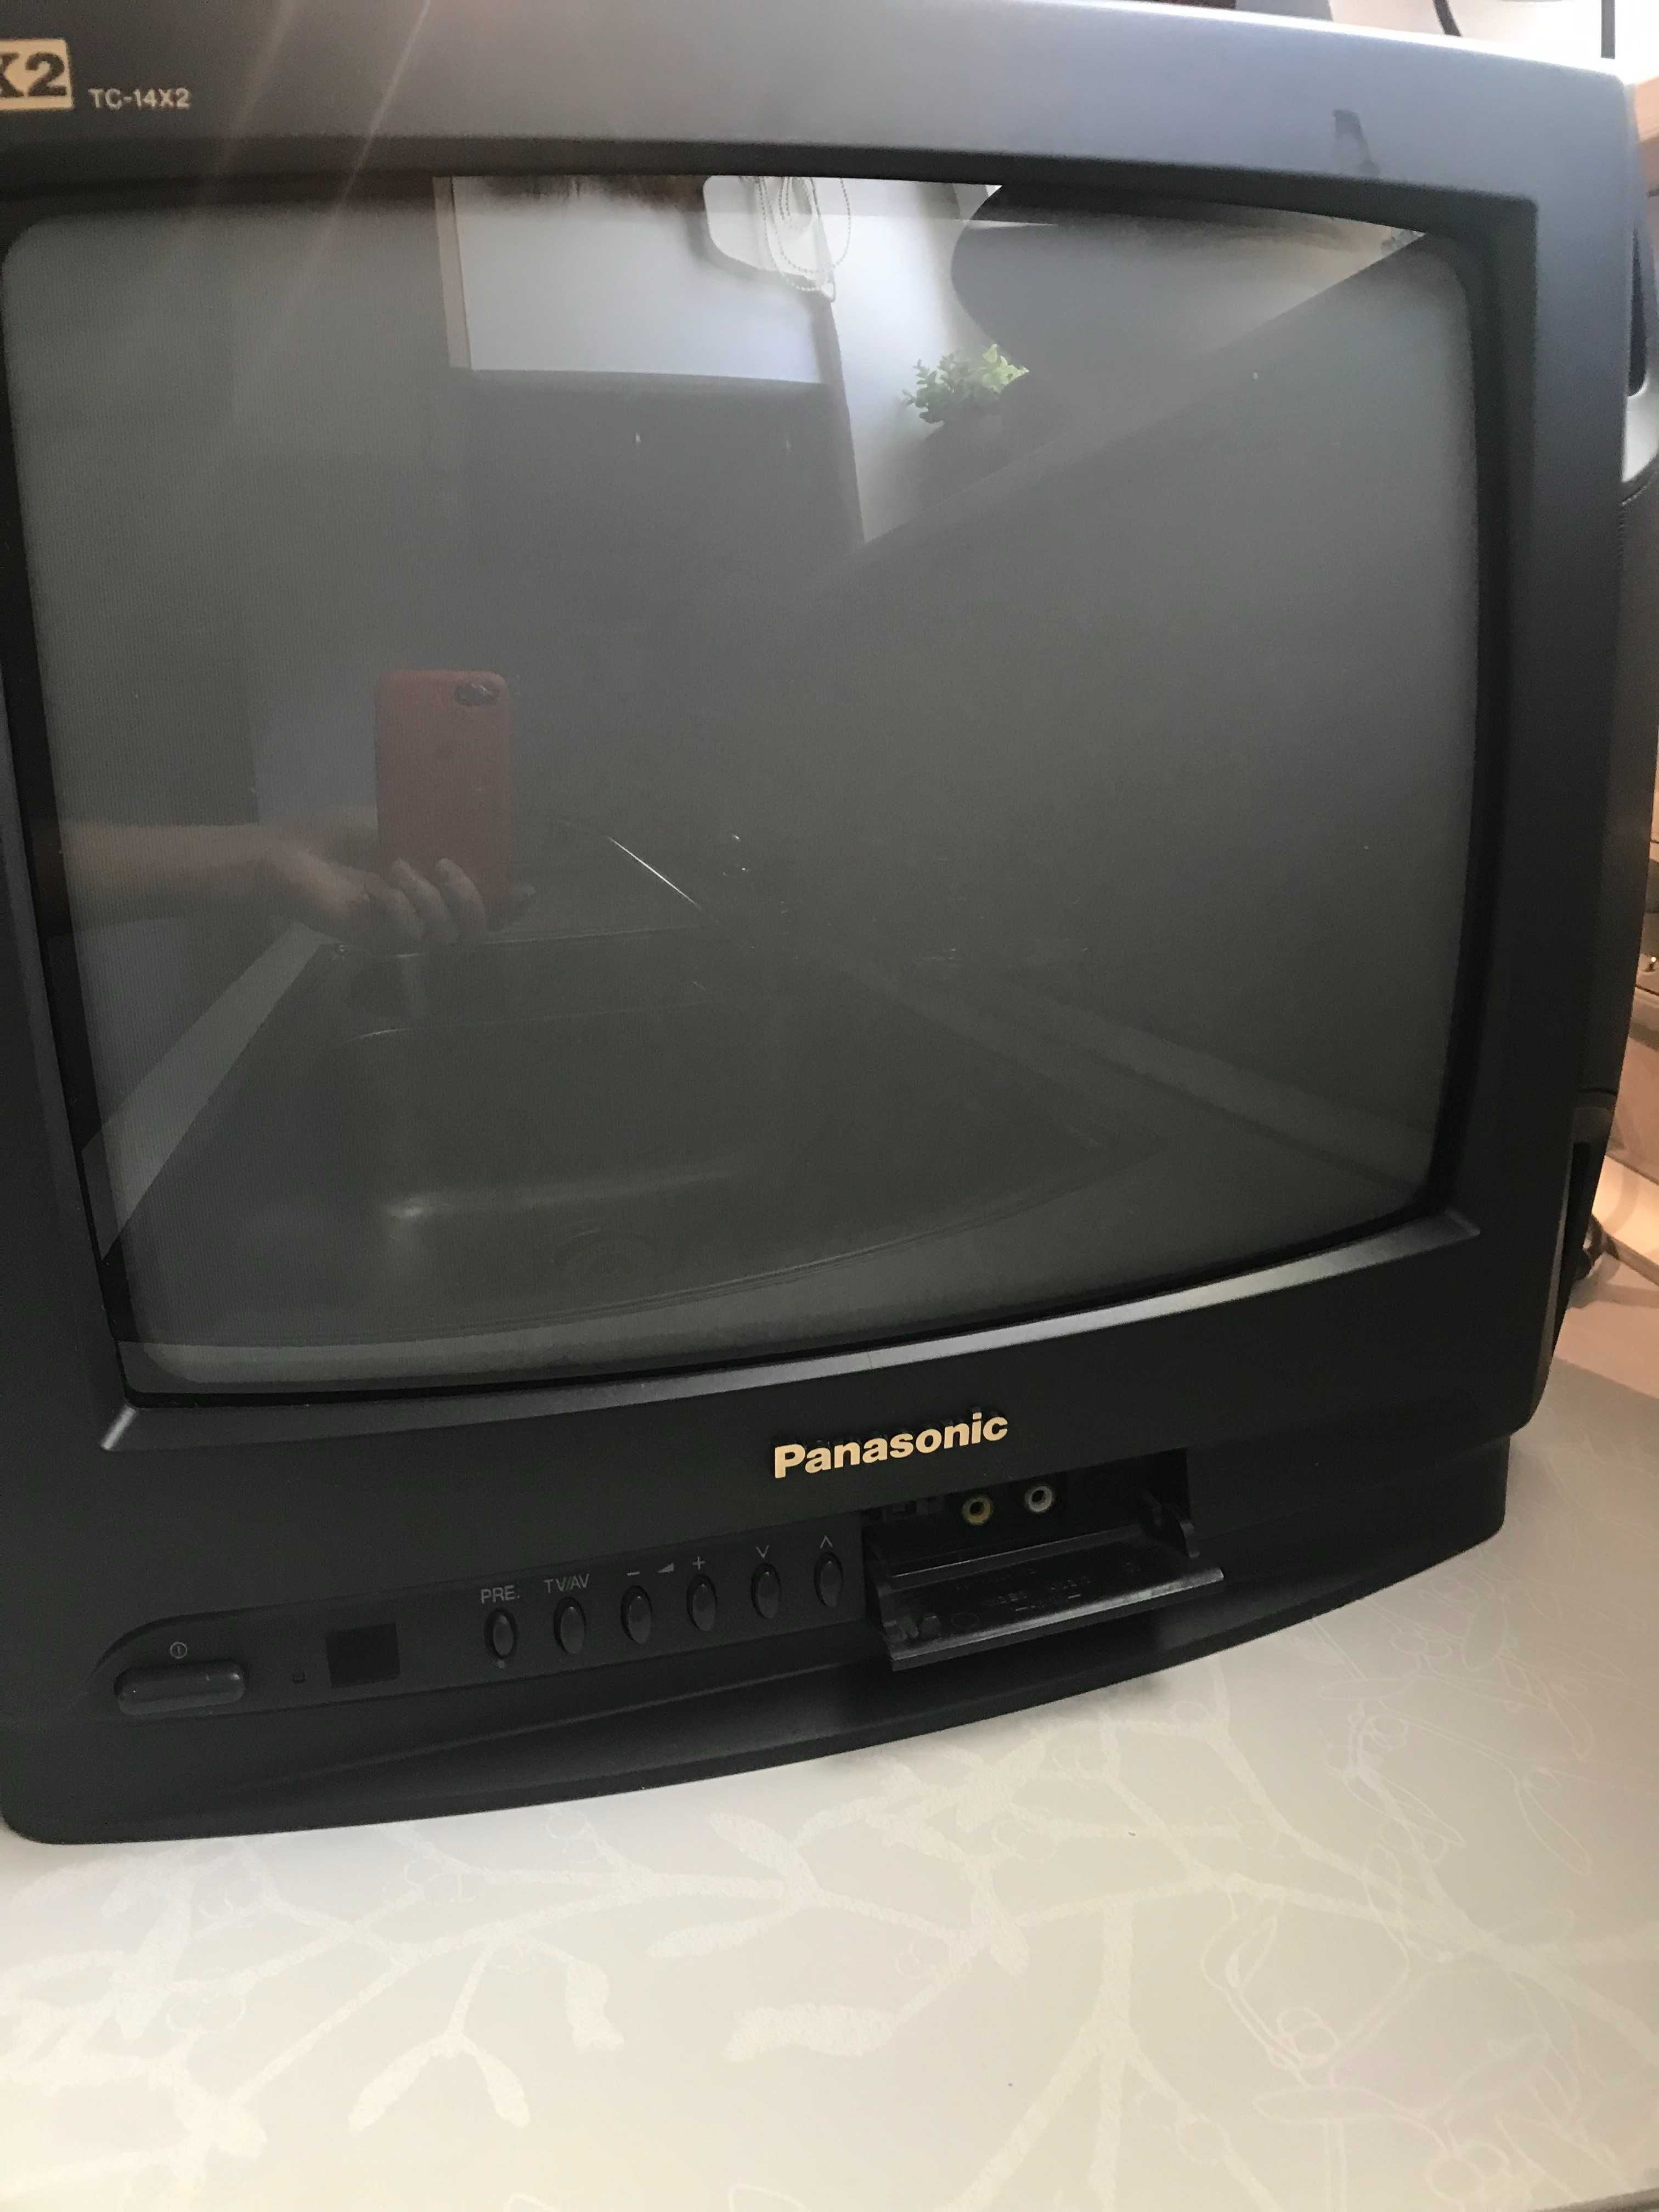 Телевизор Panasonic, аналоговый, с подставкой для крепления на стену.